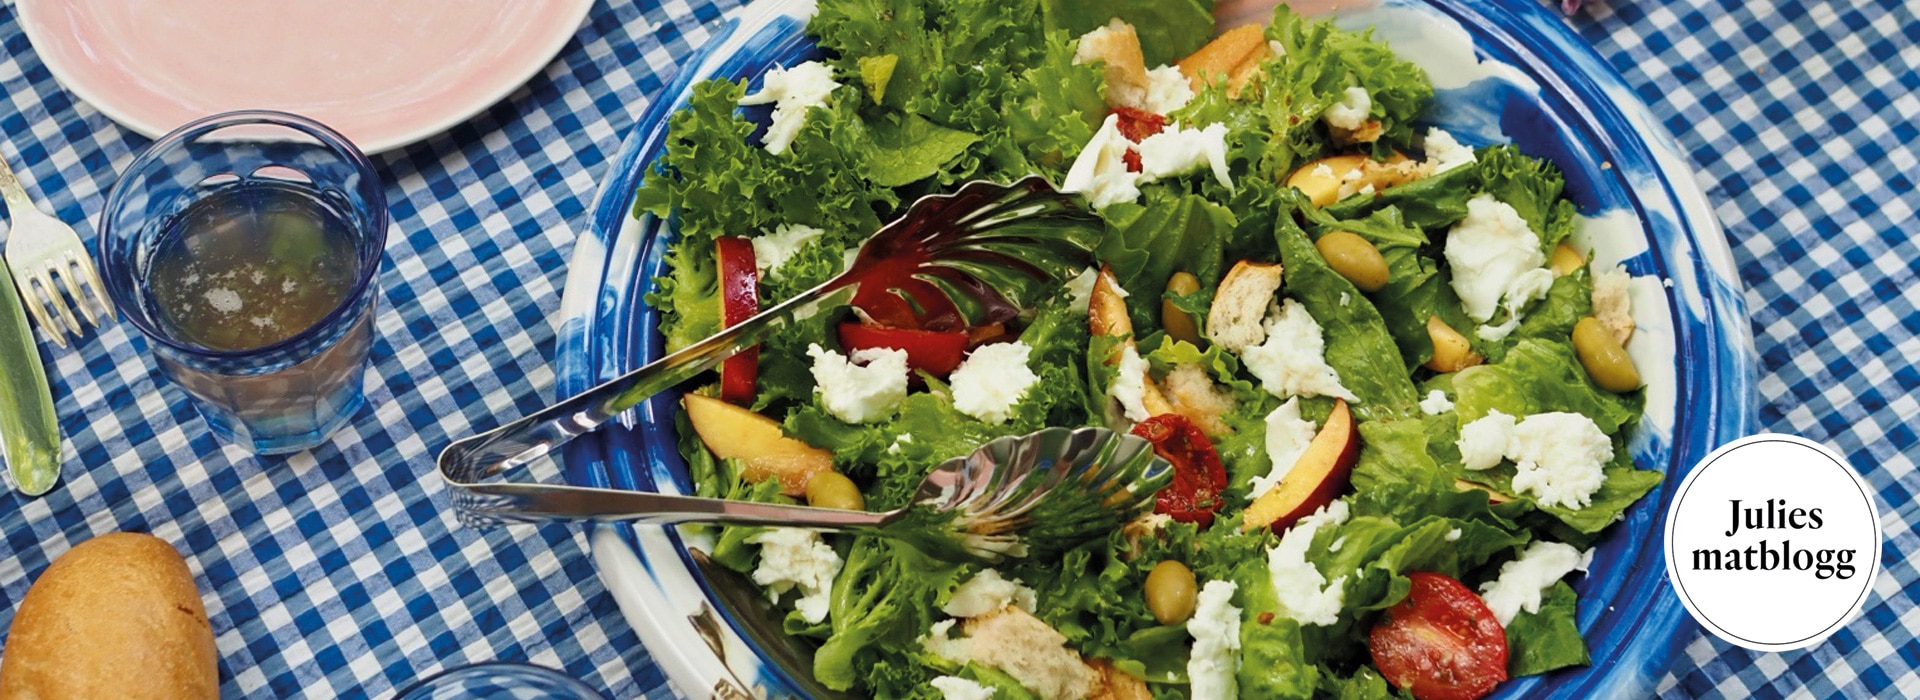 olivenlunden oppskrifter salat JM SOMMERSALAT pasjonsfruktbalsamico lucquesoliven urtesalt